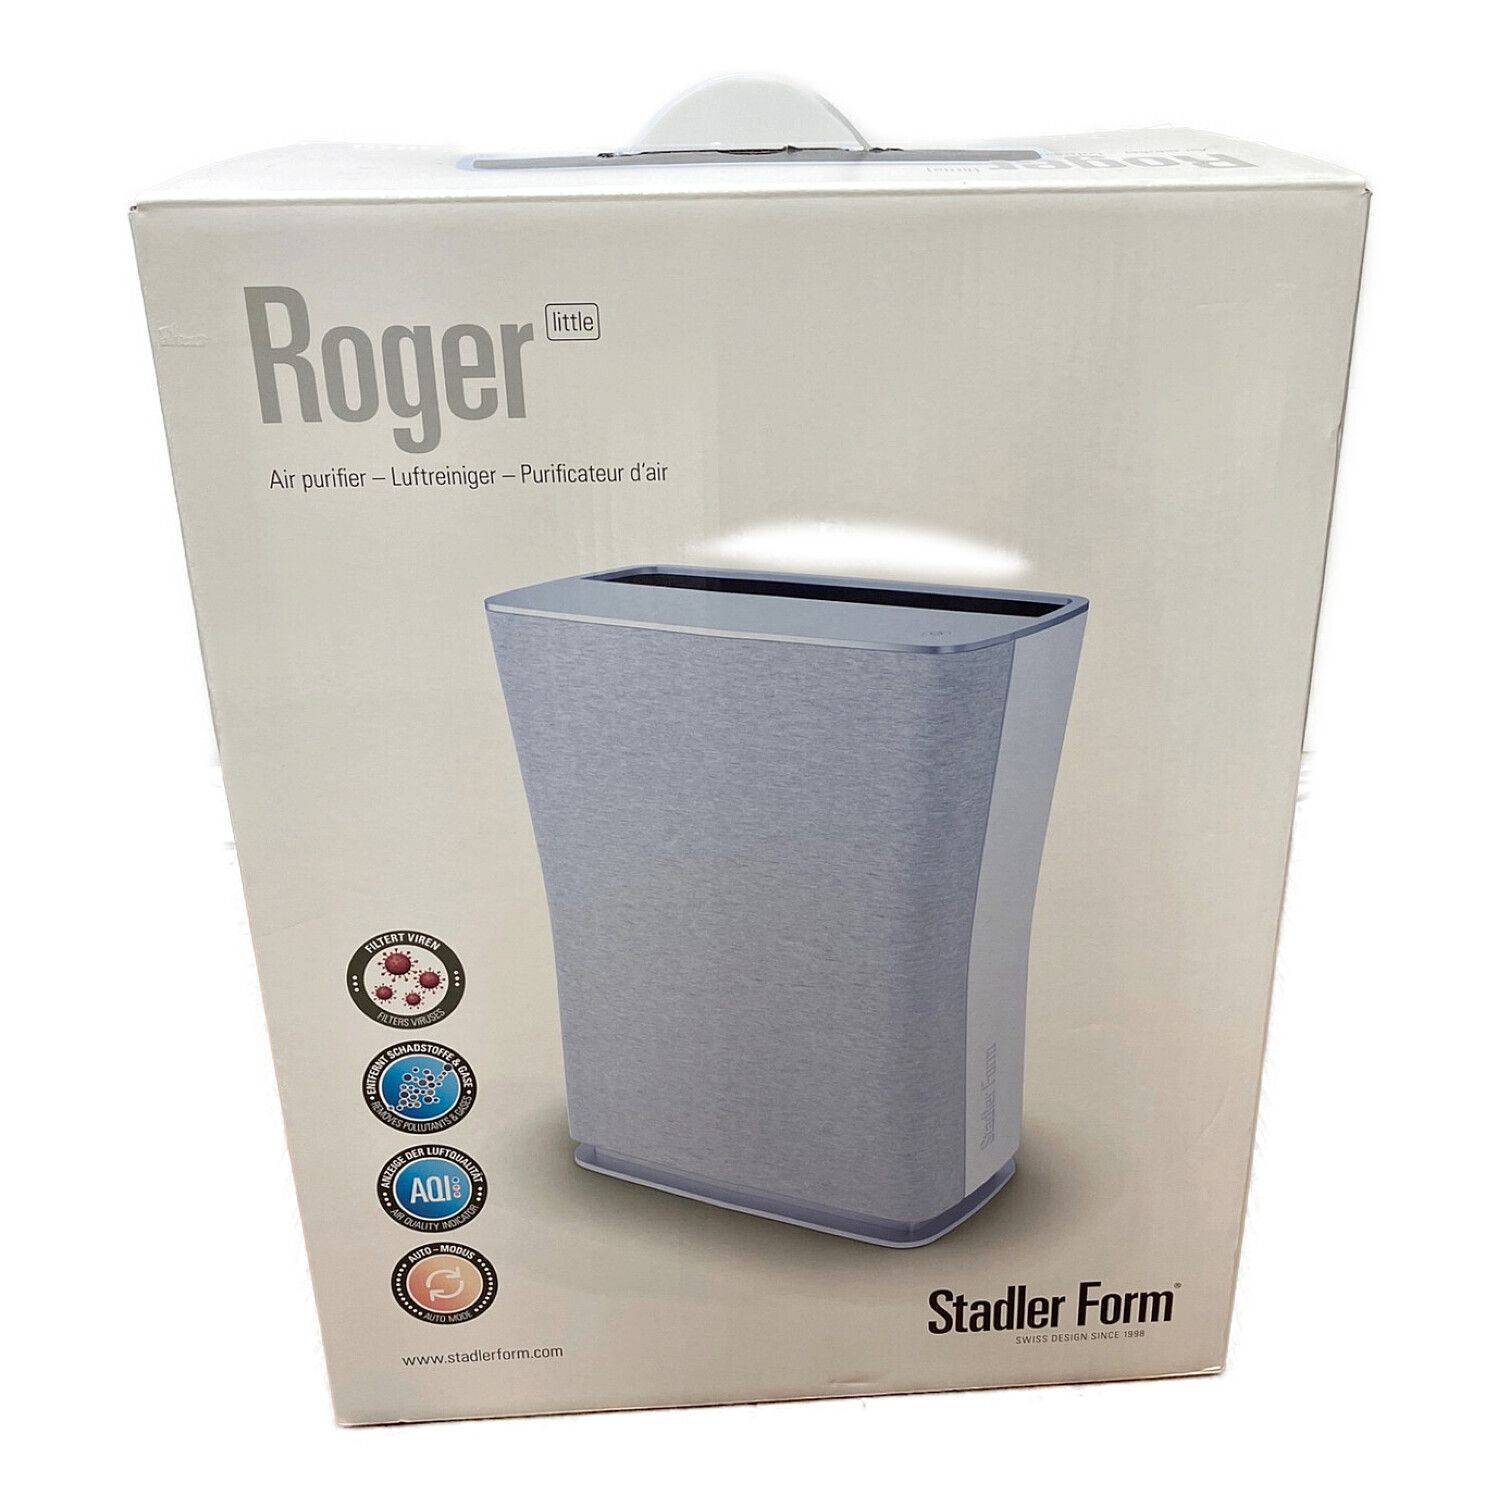 Stadler Form (スタドラーフォ) 空気清浄機 Roger 2.0 WiFi機能搭載